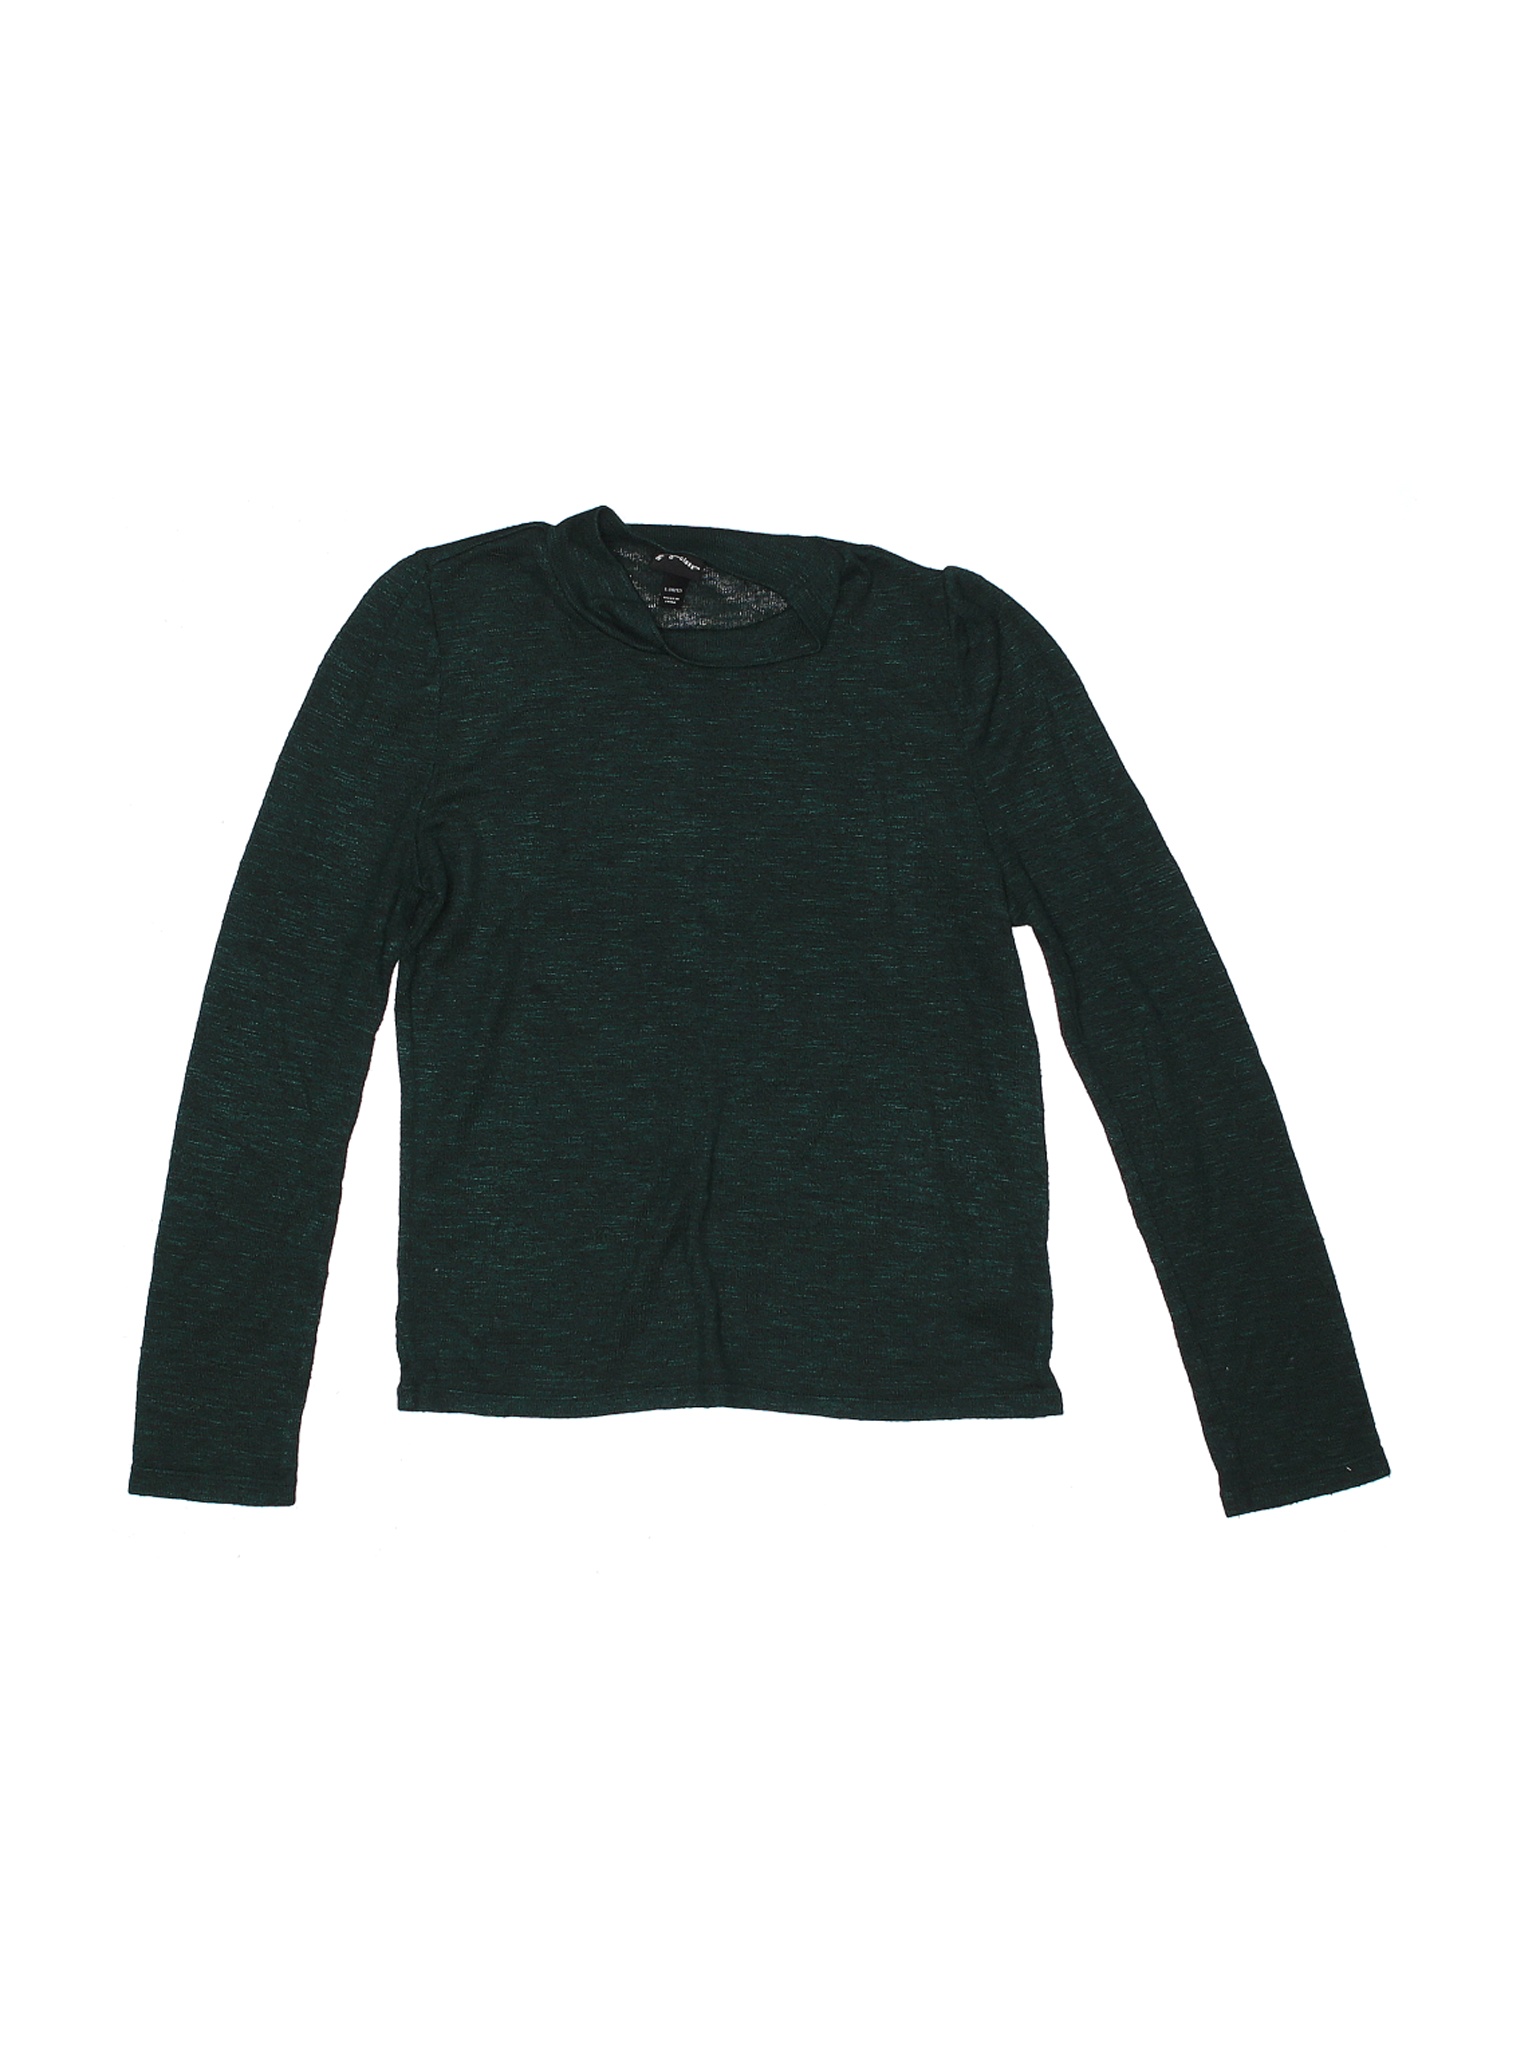 Art Class Girls Green Pullover Sweater 10 | eBay